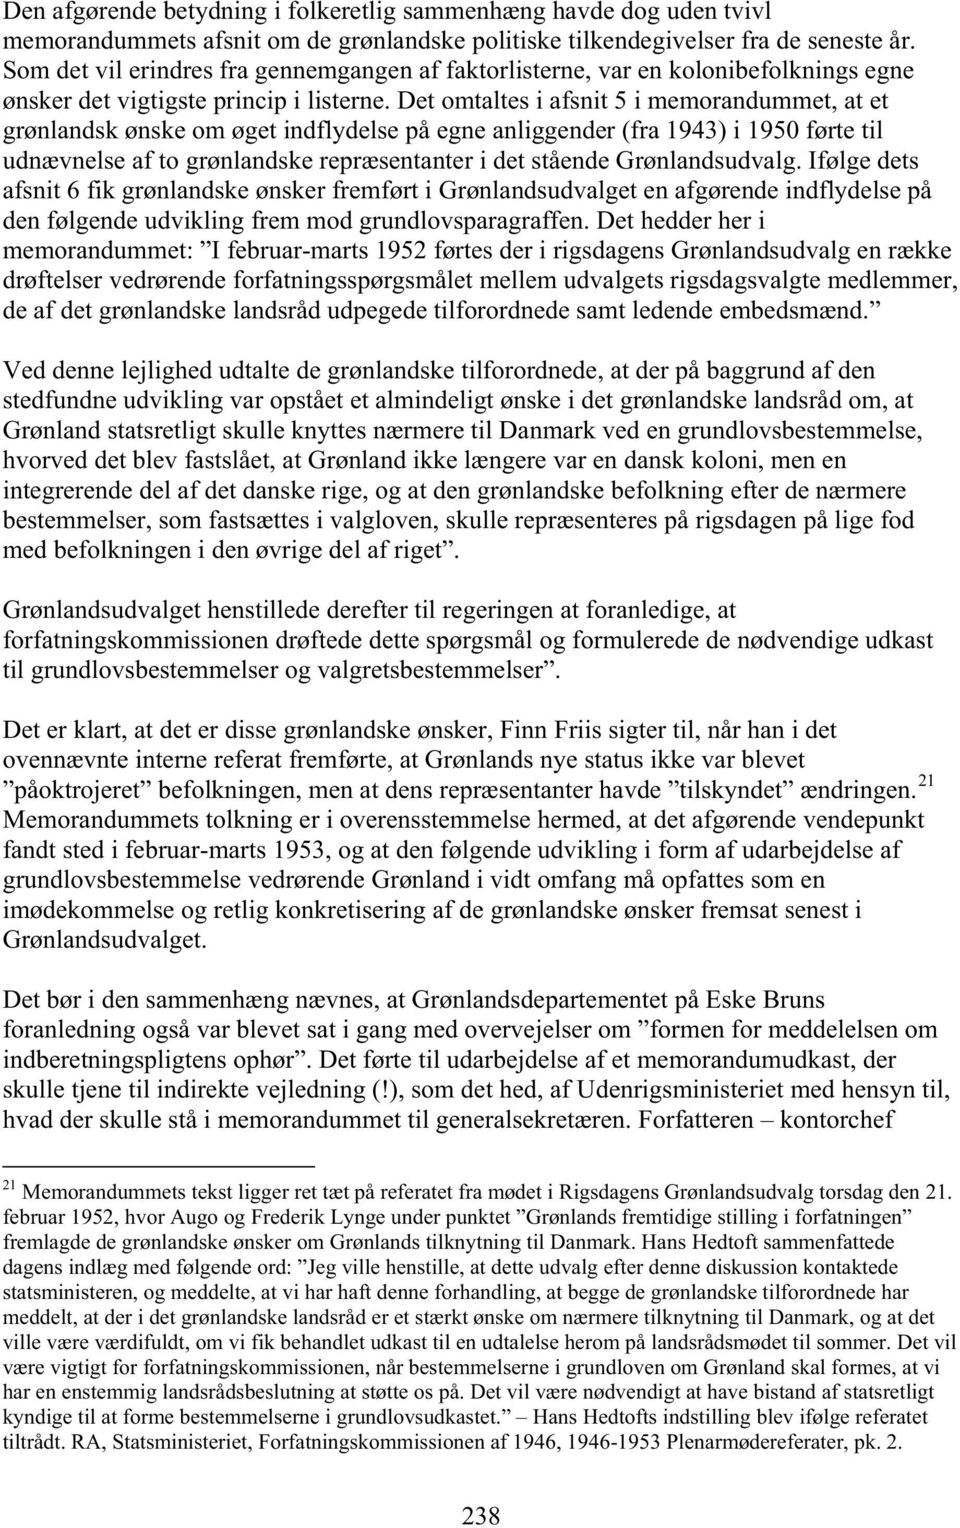 Det omtaltes i afsnit 5 i memorandummet, at et grønlandsk ønske om øget indflydelse på egne anliggender (fra 1943) i 1950 førte til udnævnelse af to grønlandske repræsentanter i det stående